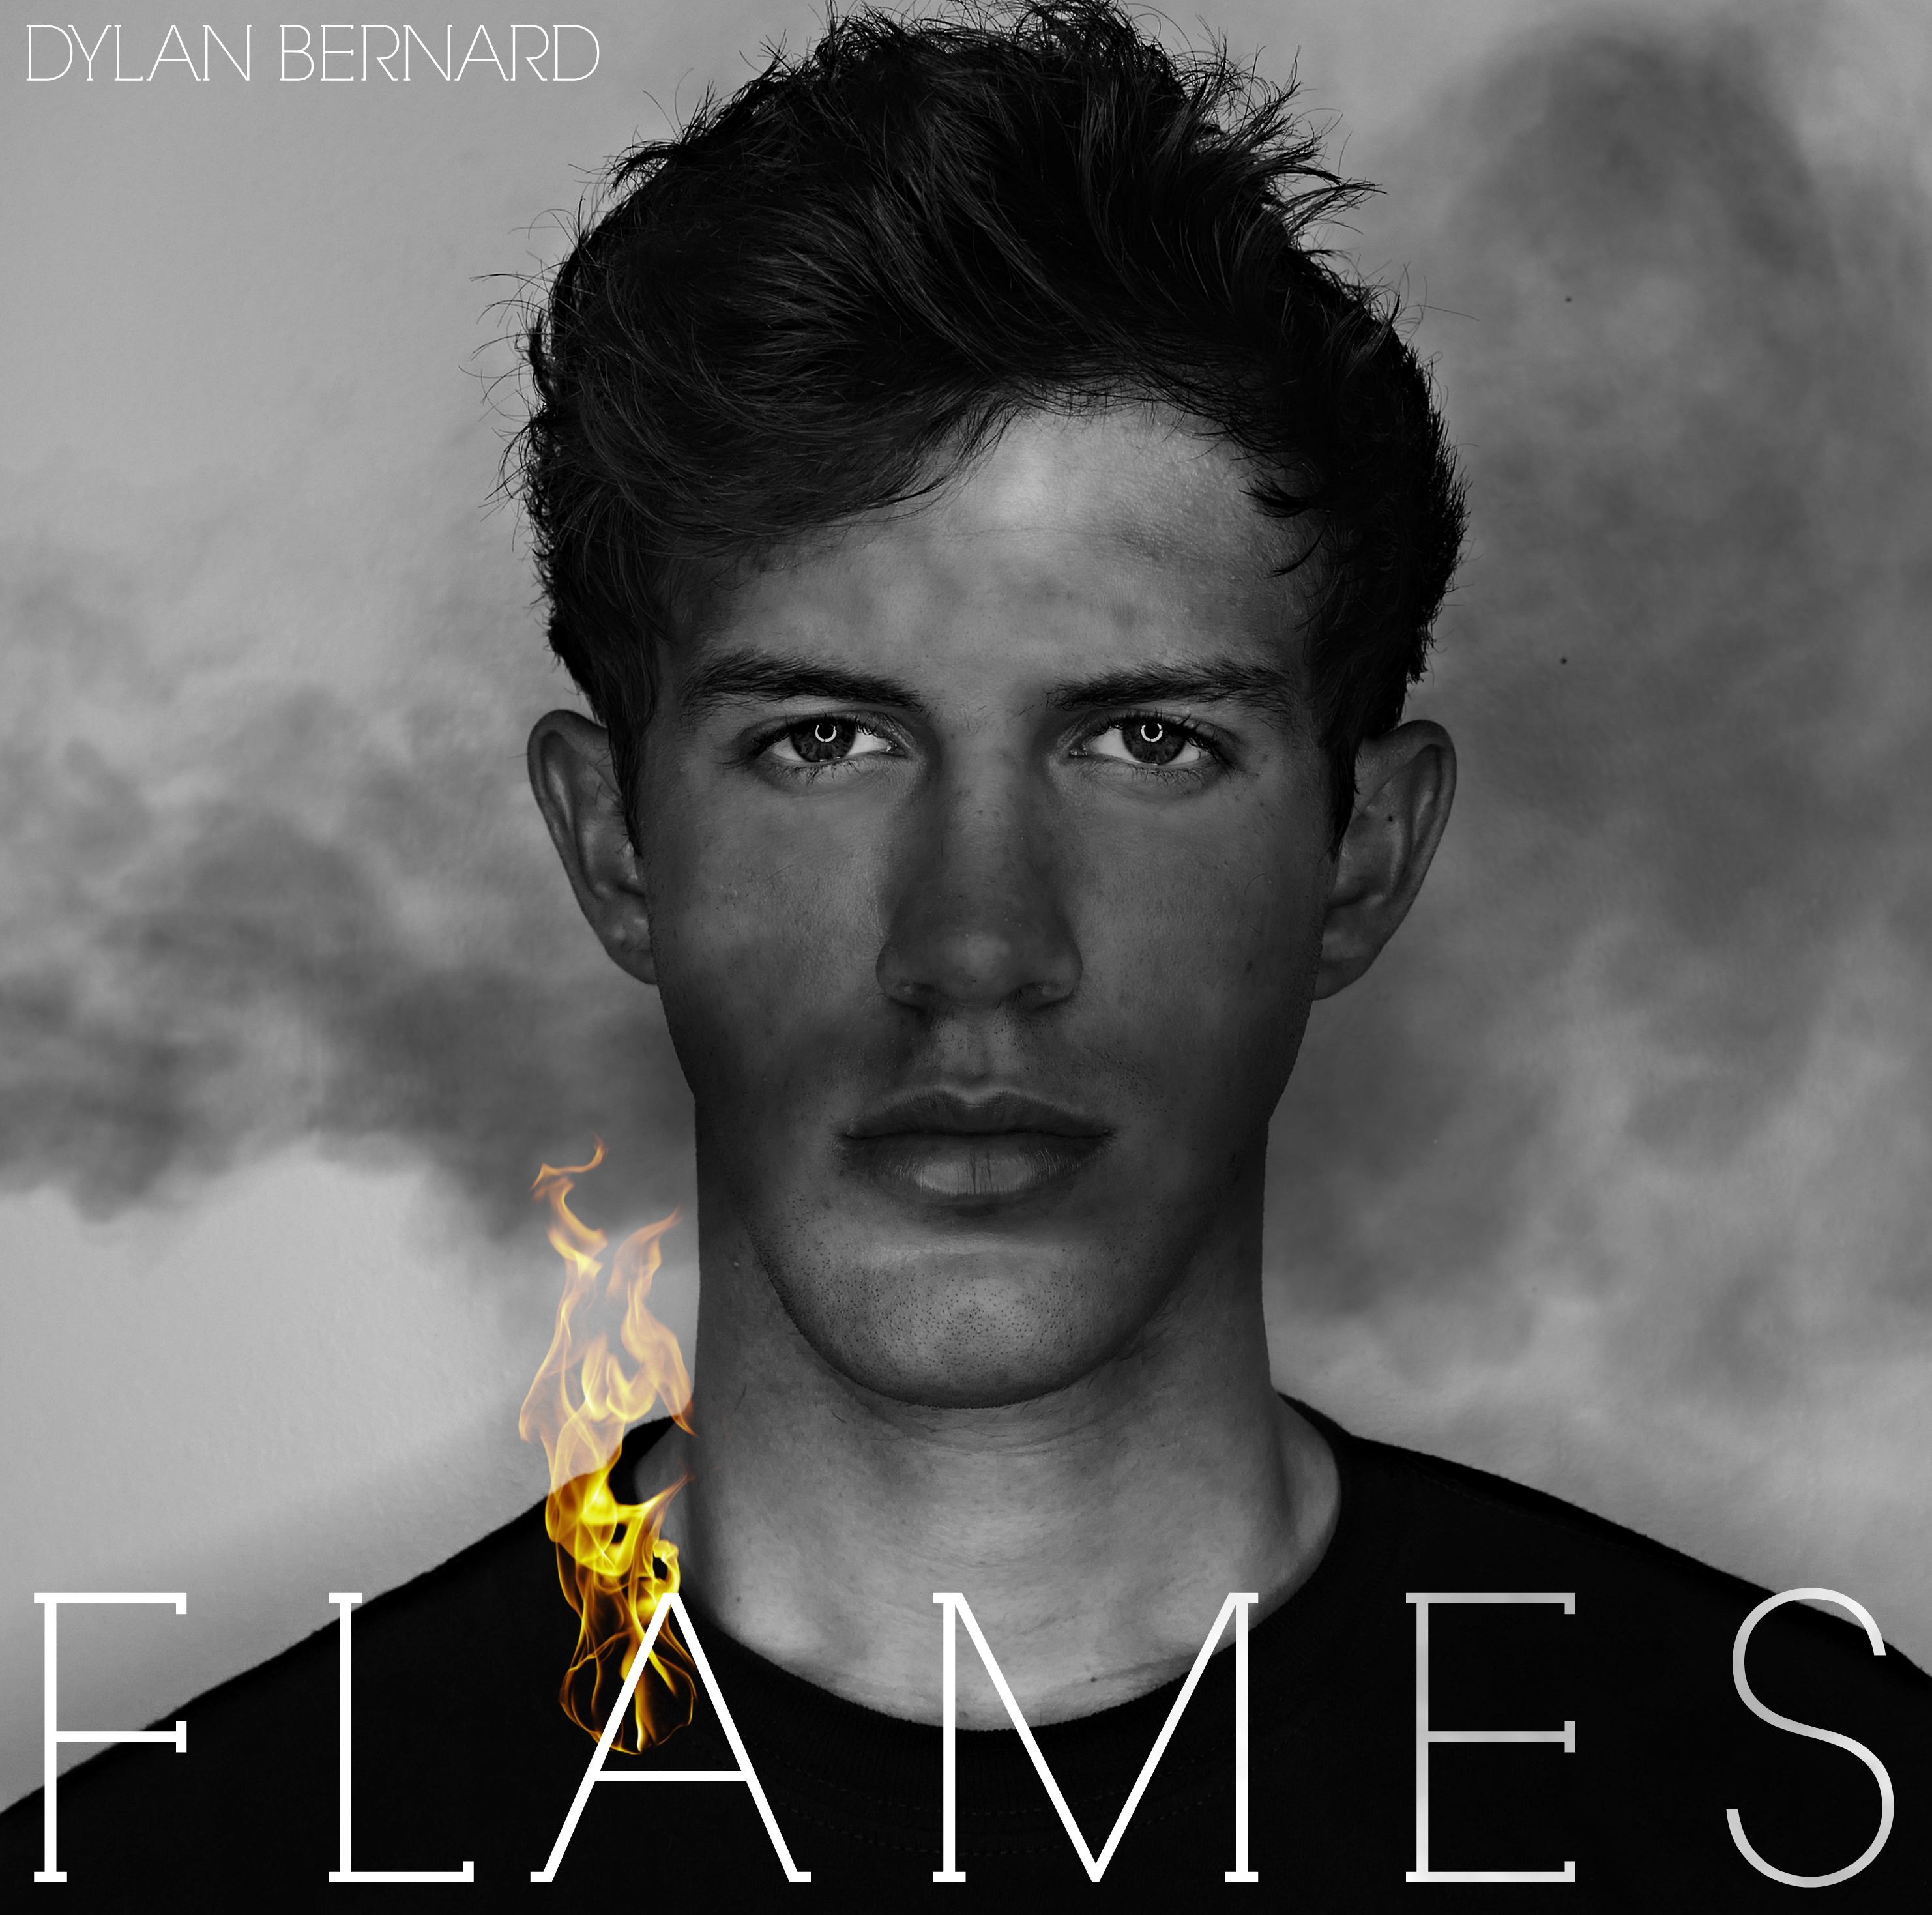 Dylan Bernard - "Flames"